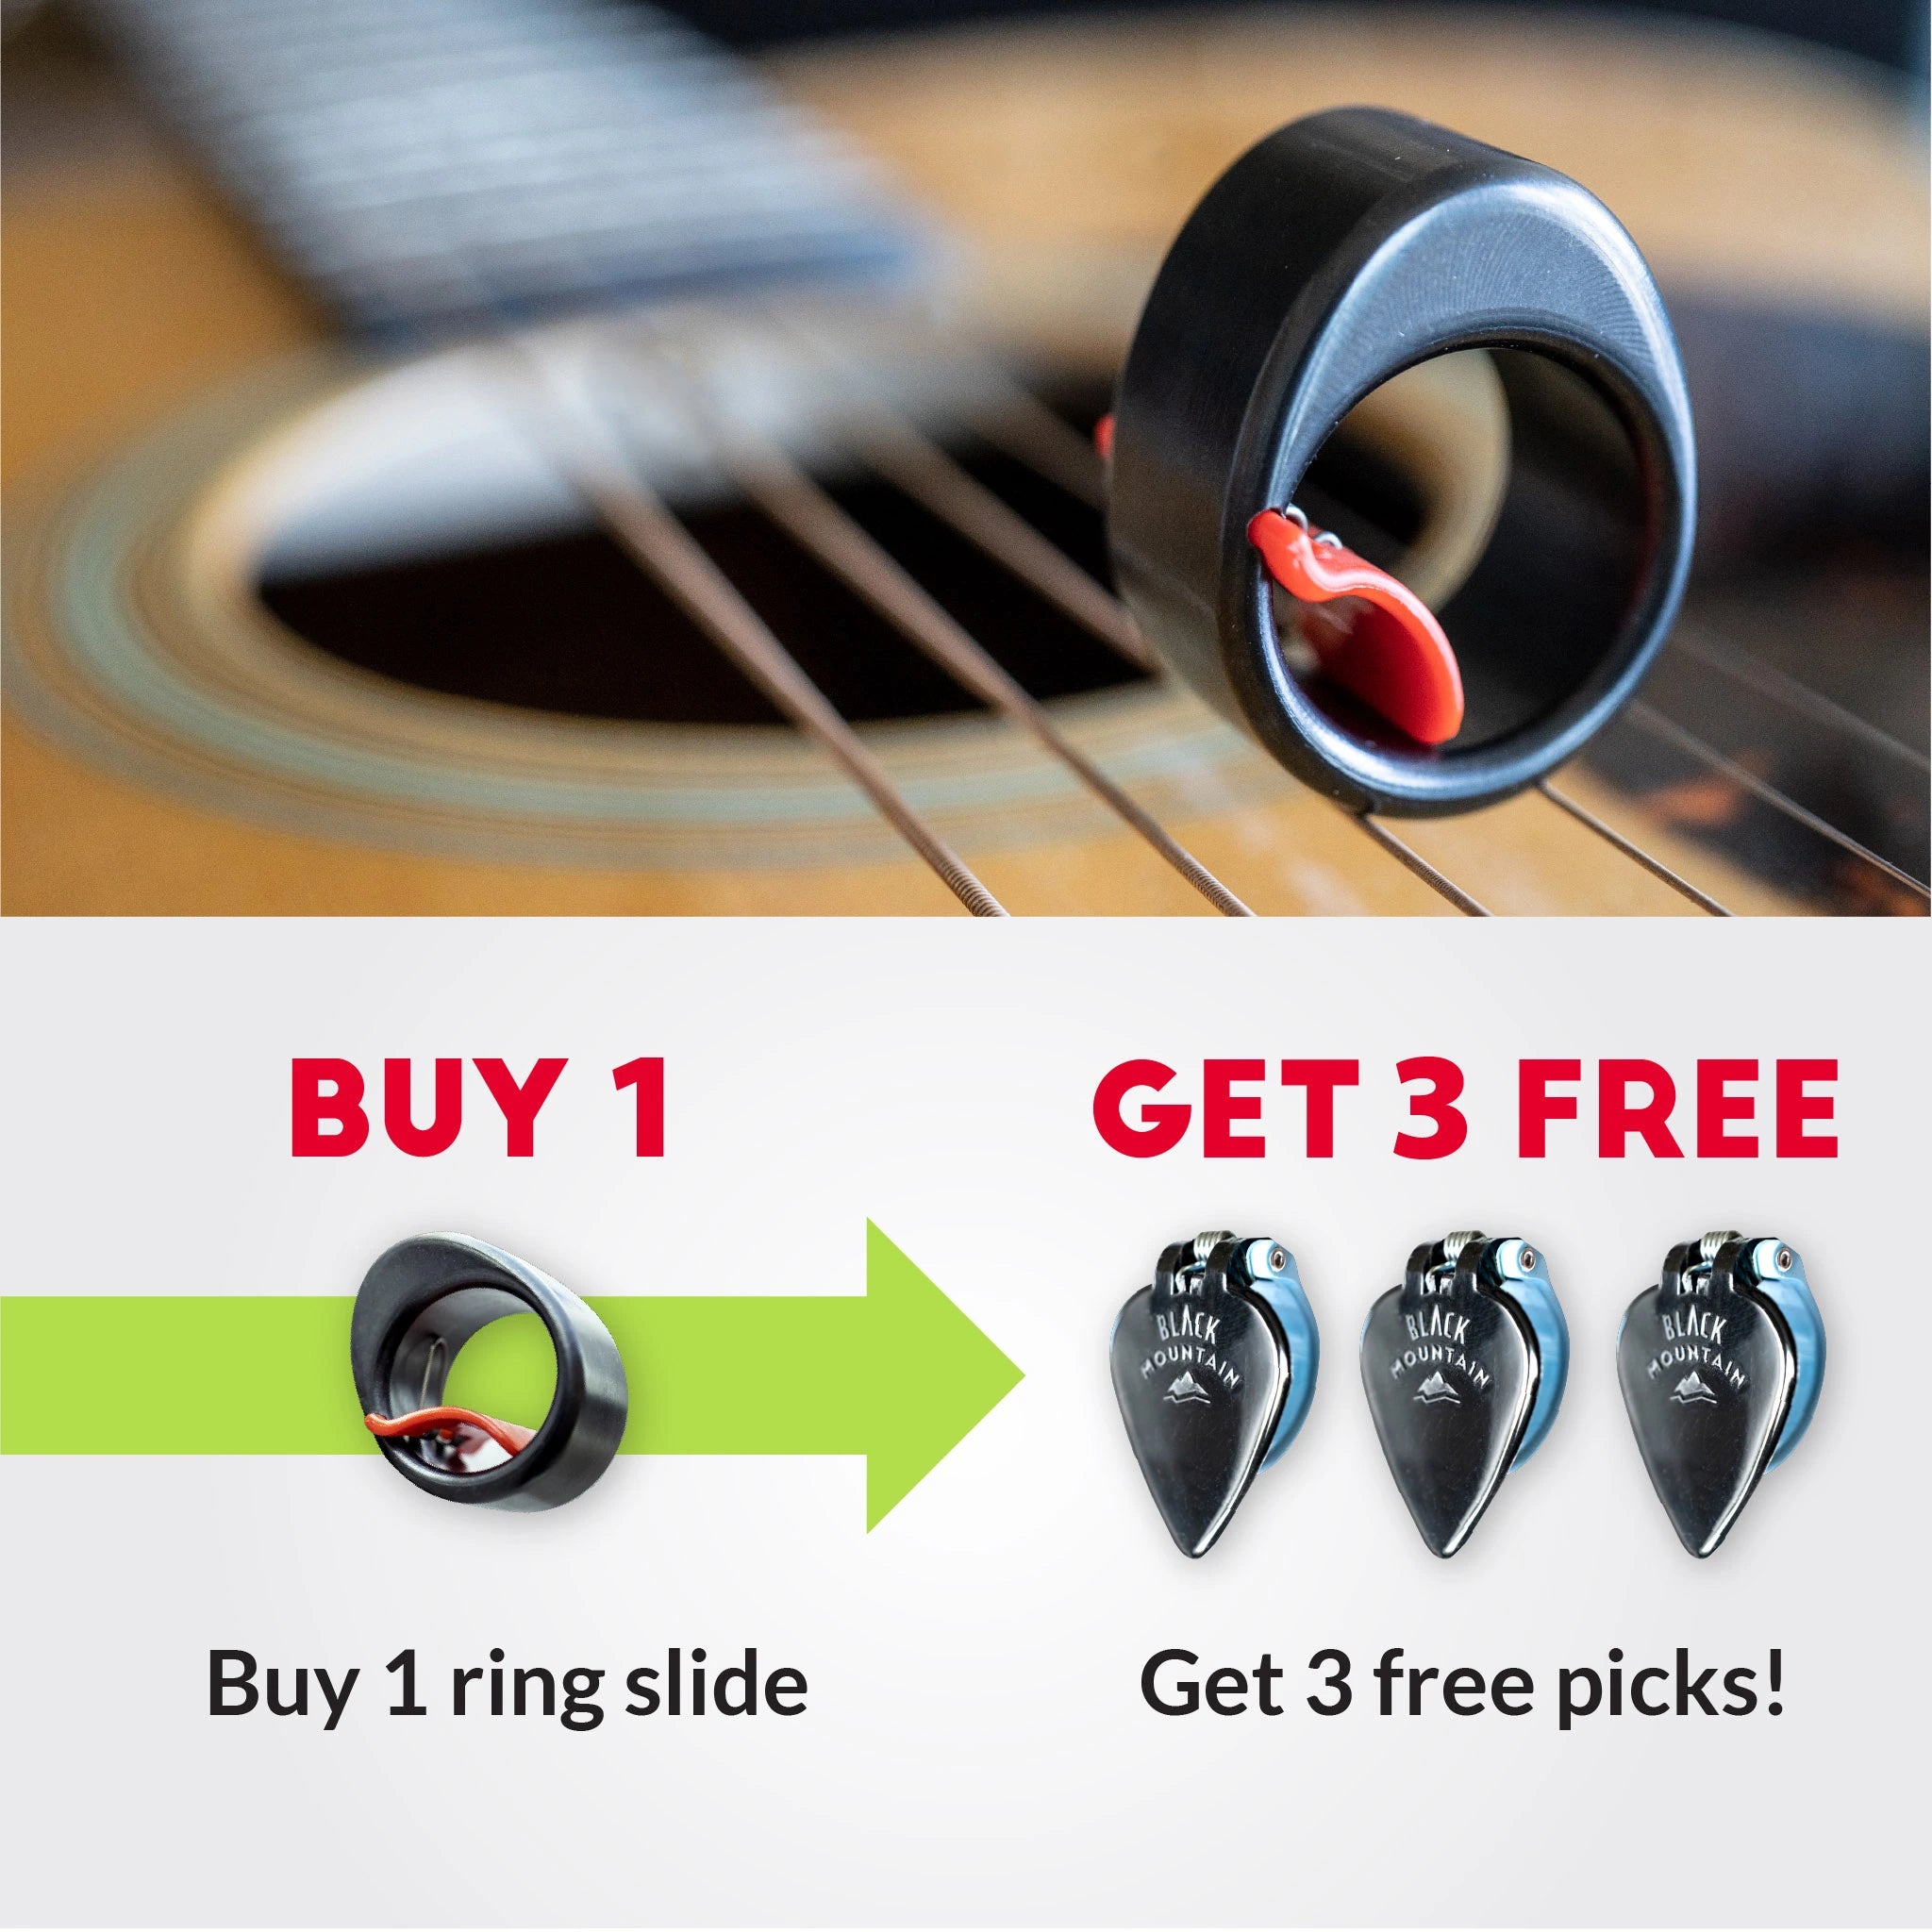 Buy 1 Slide Ring, Get 3 Free Picks